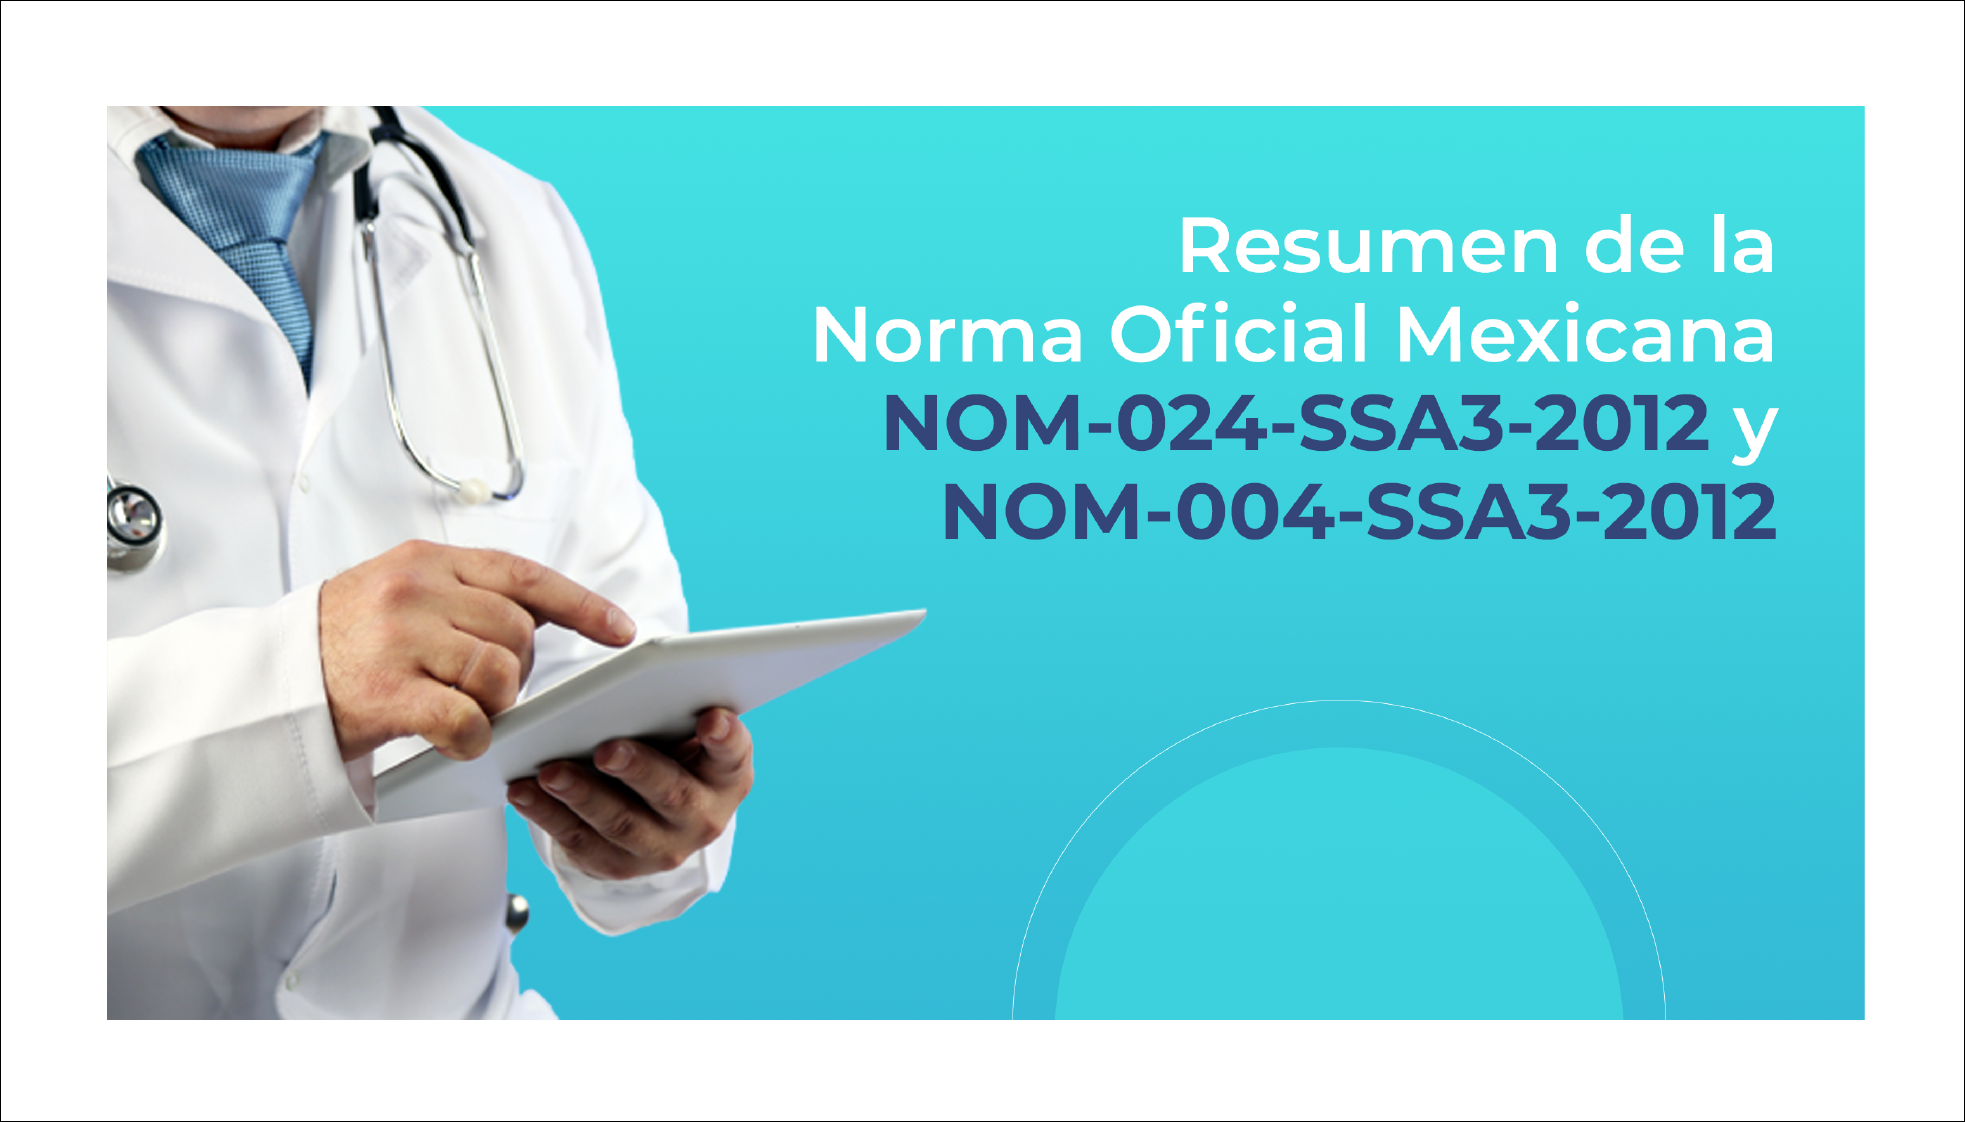 Resumen de la Norma Oficial Mexicana NOM-024-SSA3-2012 y NOM-004-SSA3-2012